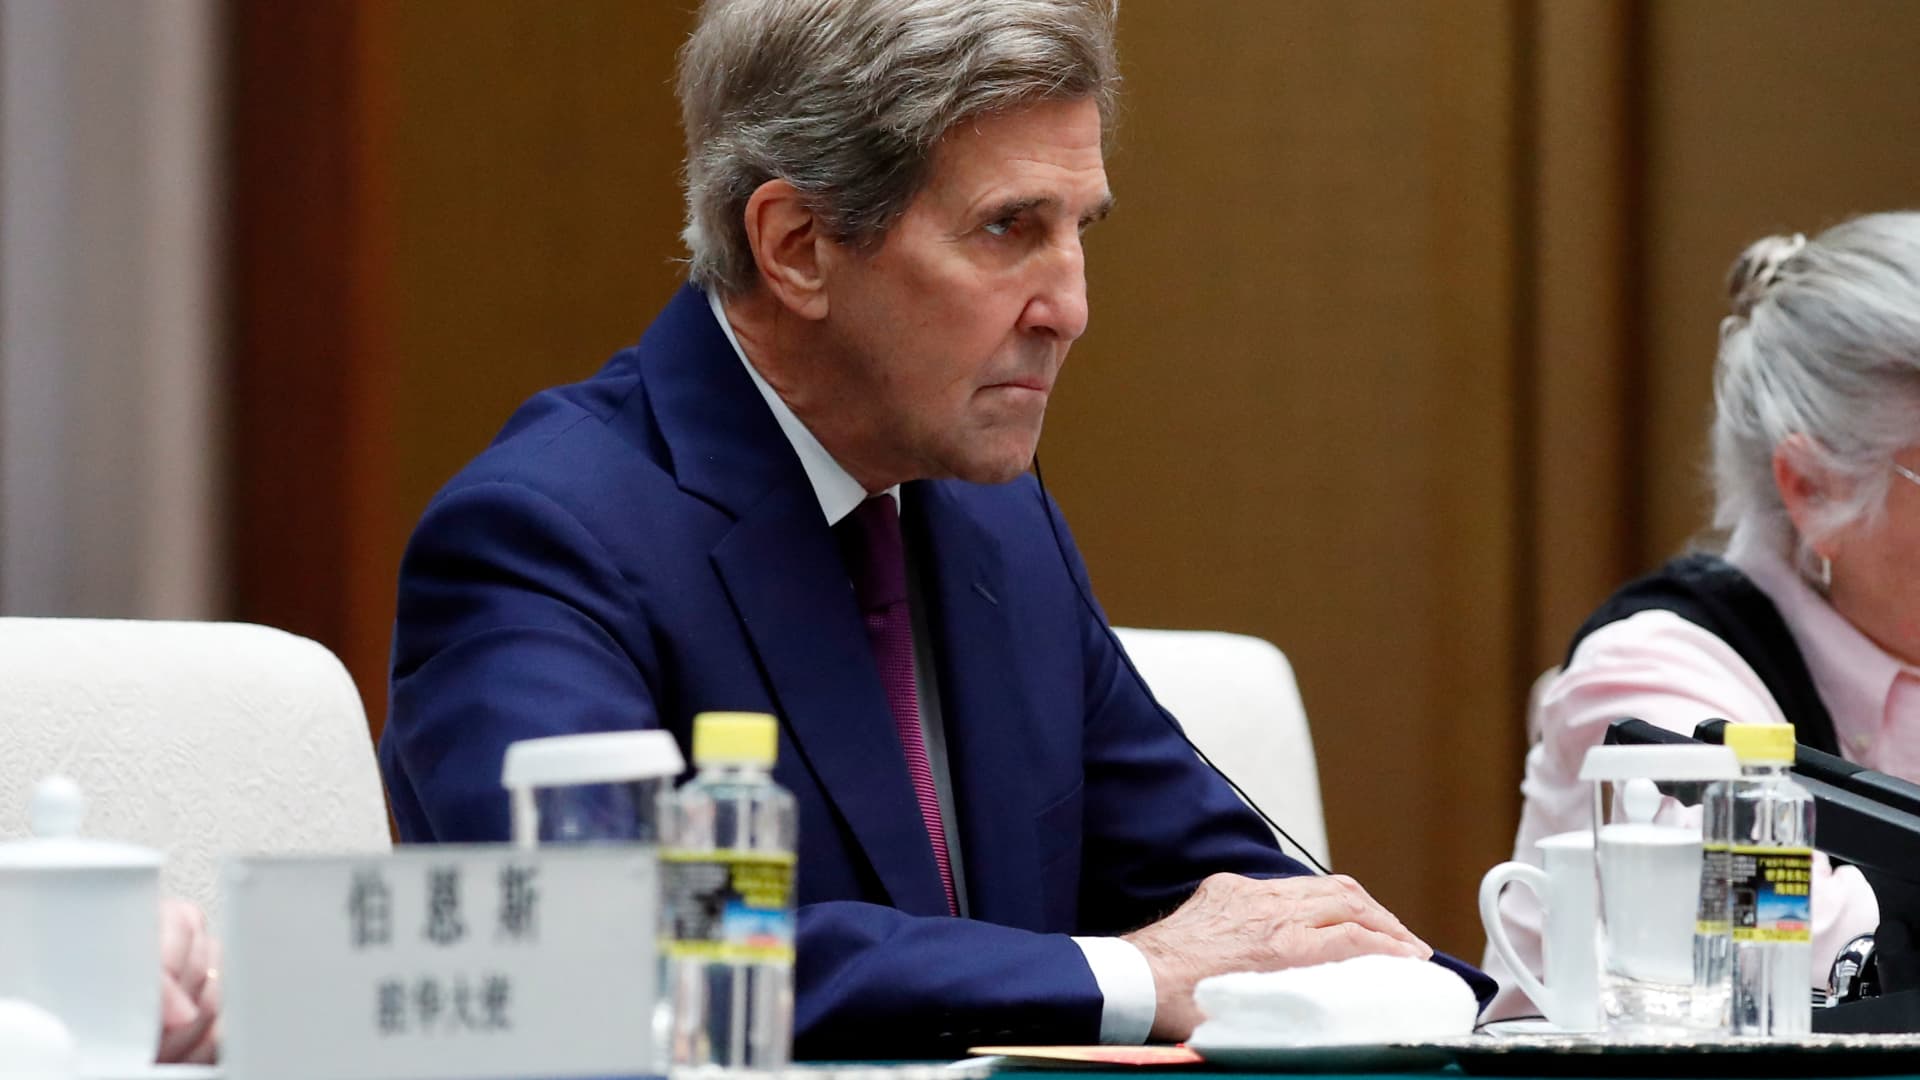 U.S. climate envoy John Kerry hints at potential Xi-Biden meeting